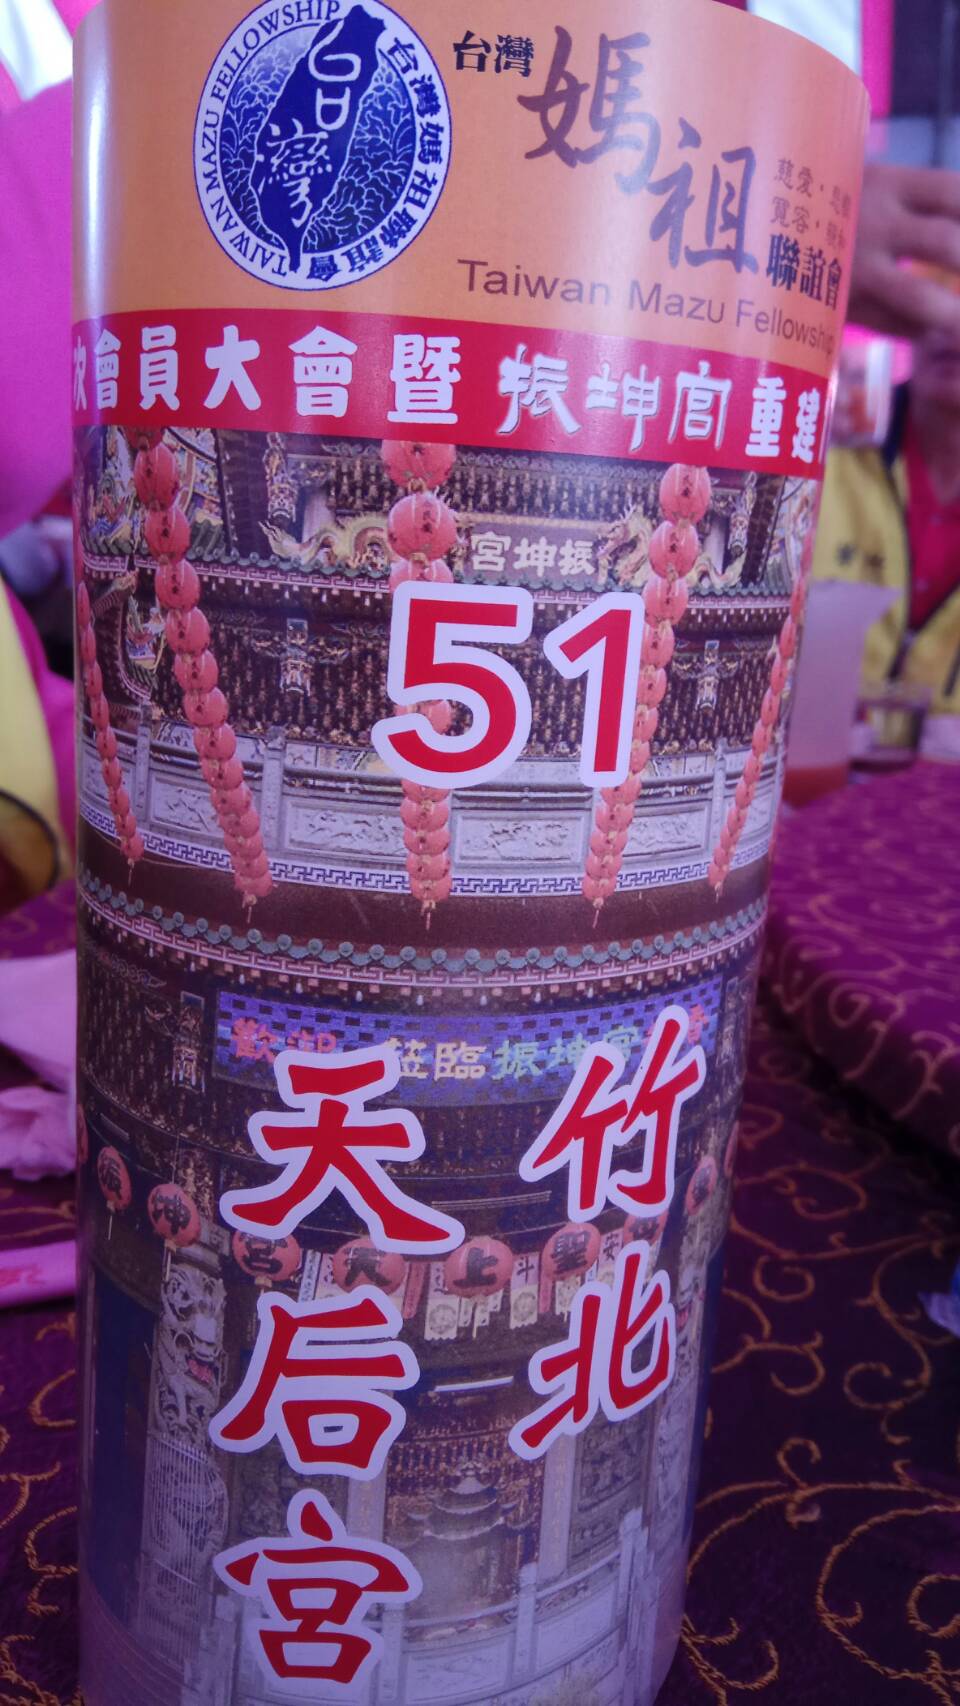 祝賀 台灣媽祖聯誼會第41次大會暨振坤宮重建18週年宮慶 圓滿成功。